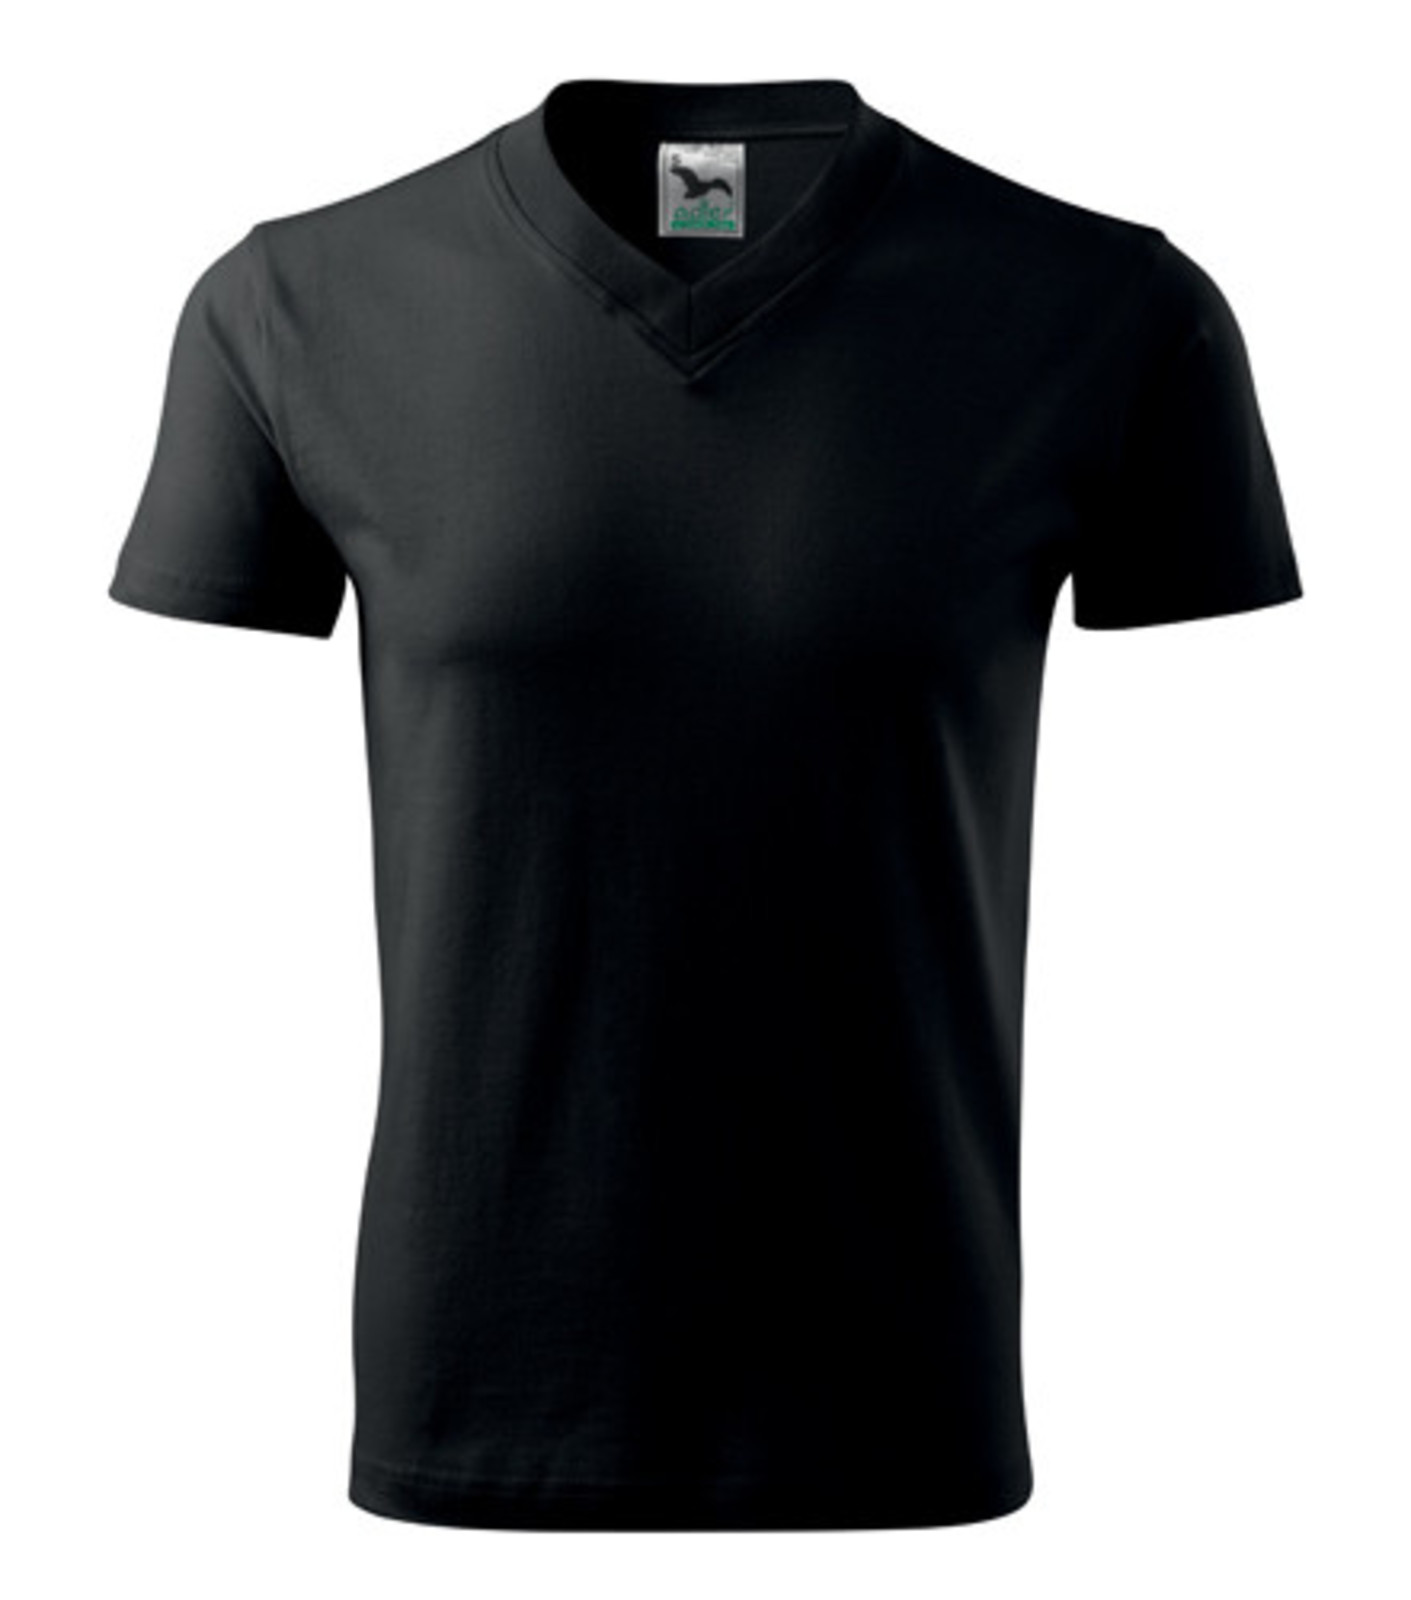 Unisex tričko s výstrihom Adler V-Neck 102 - veľkosť: M, farba: čierna